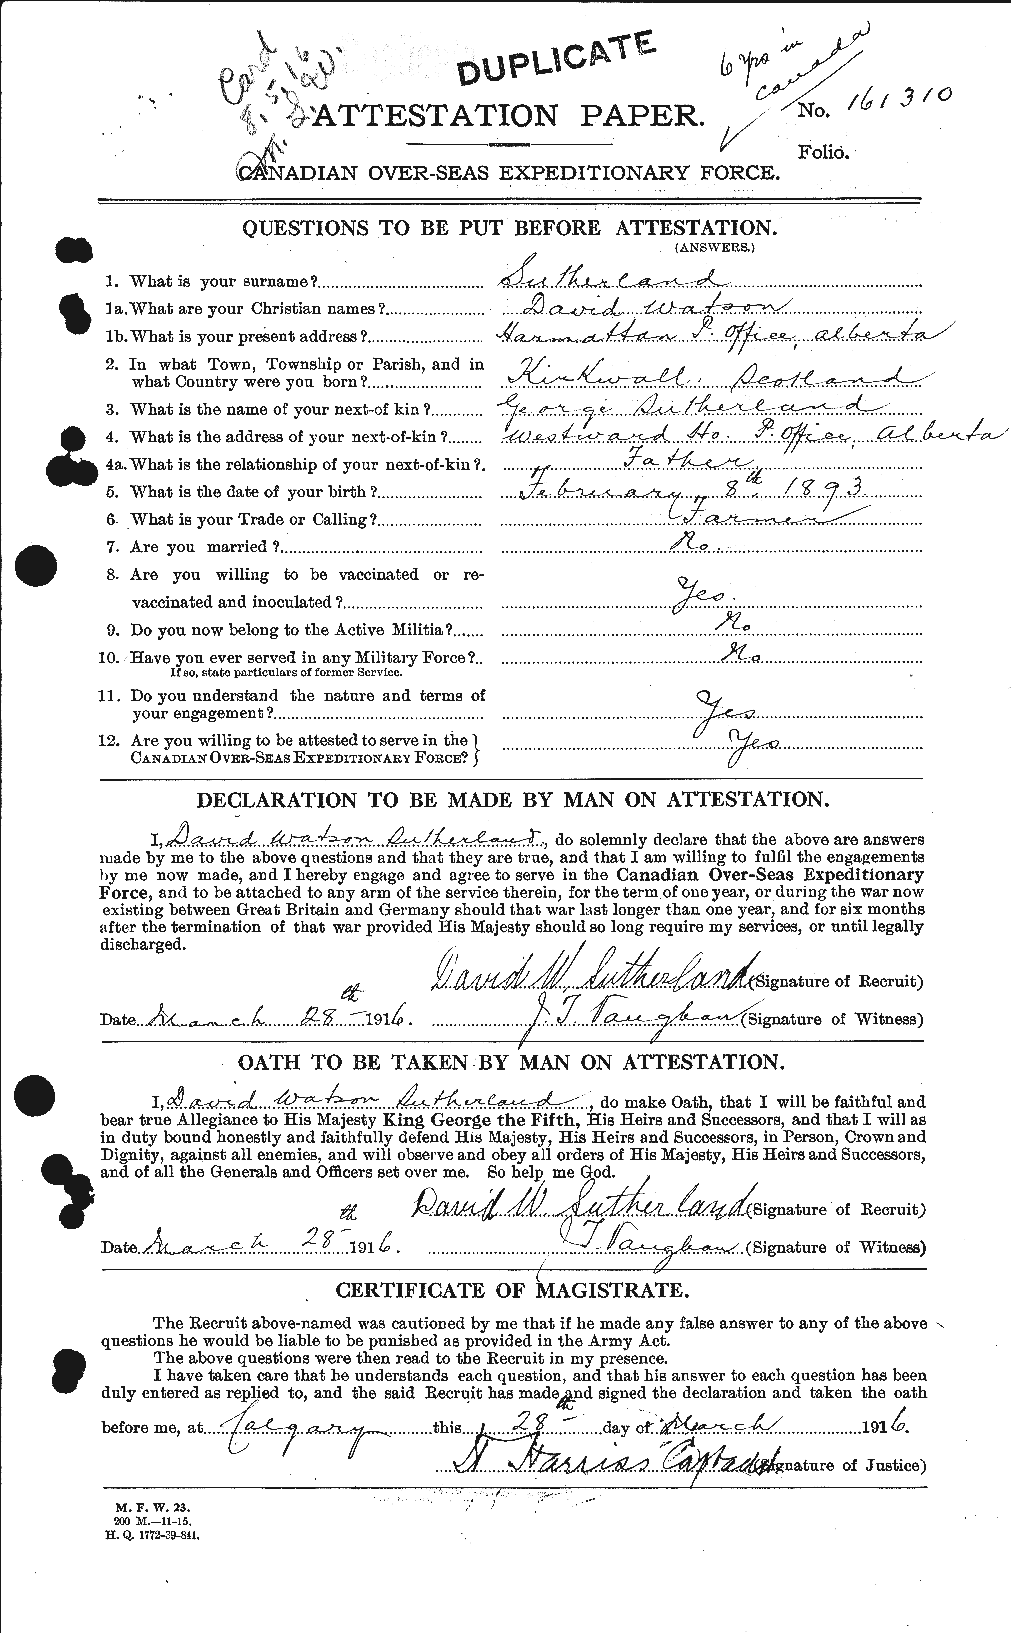 Dossiers du Personnel de la Première Guerre mondiale - CEC 124930a